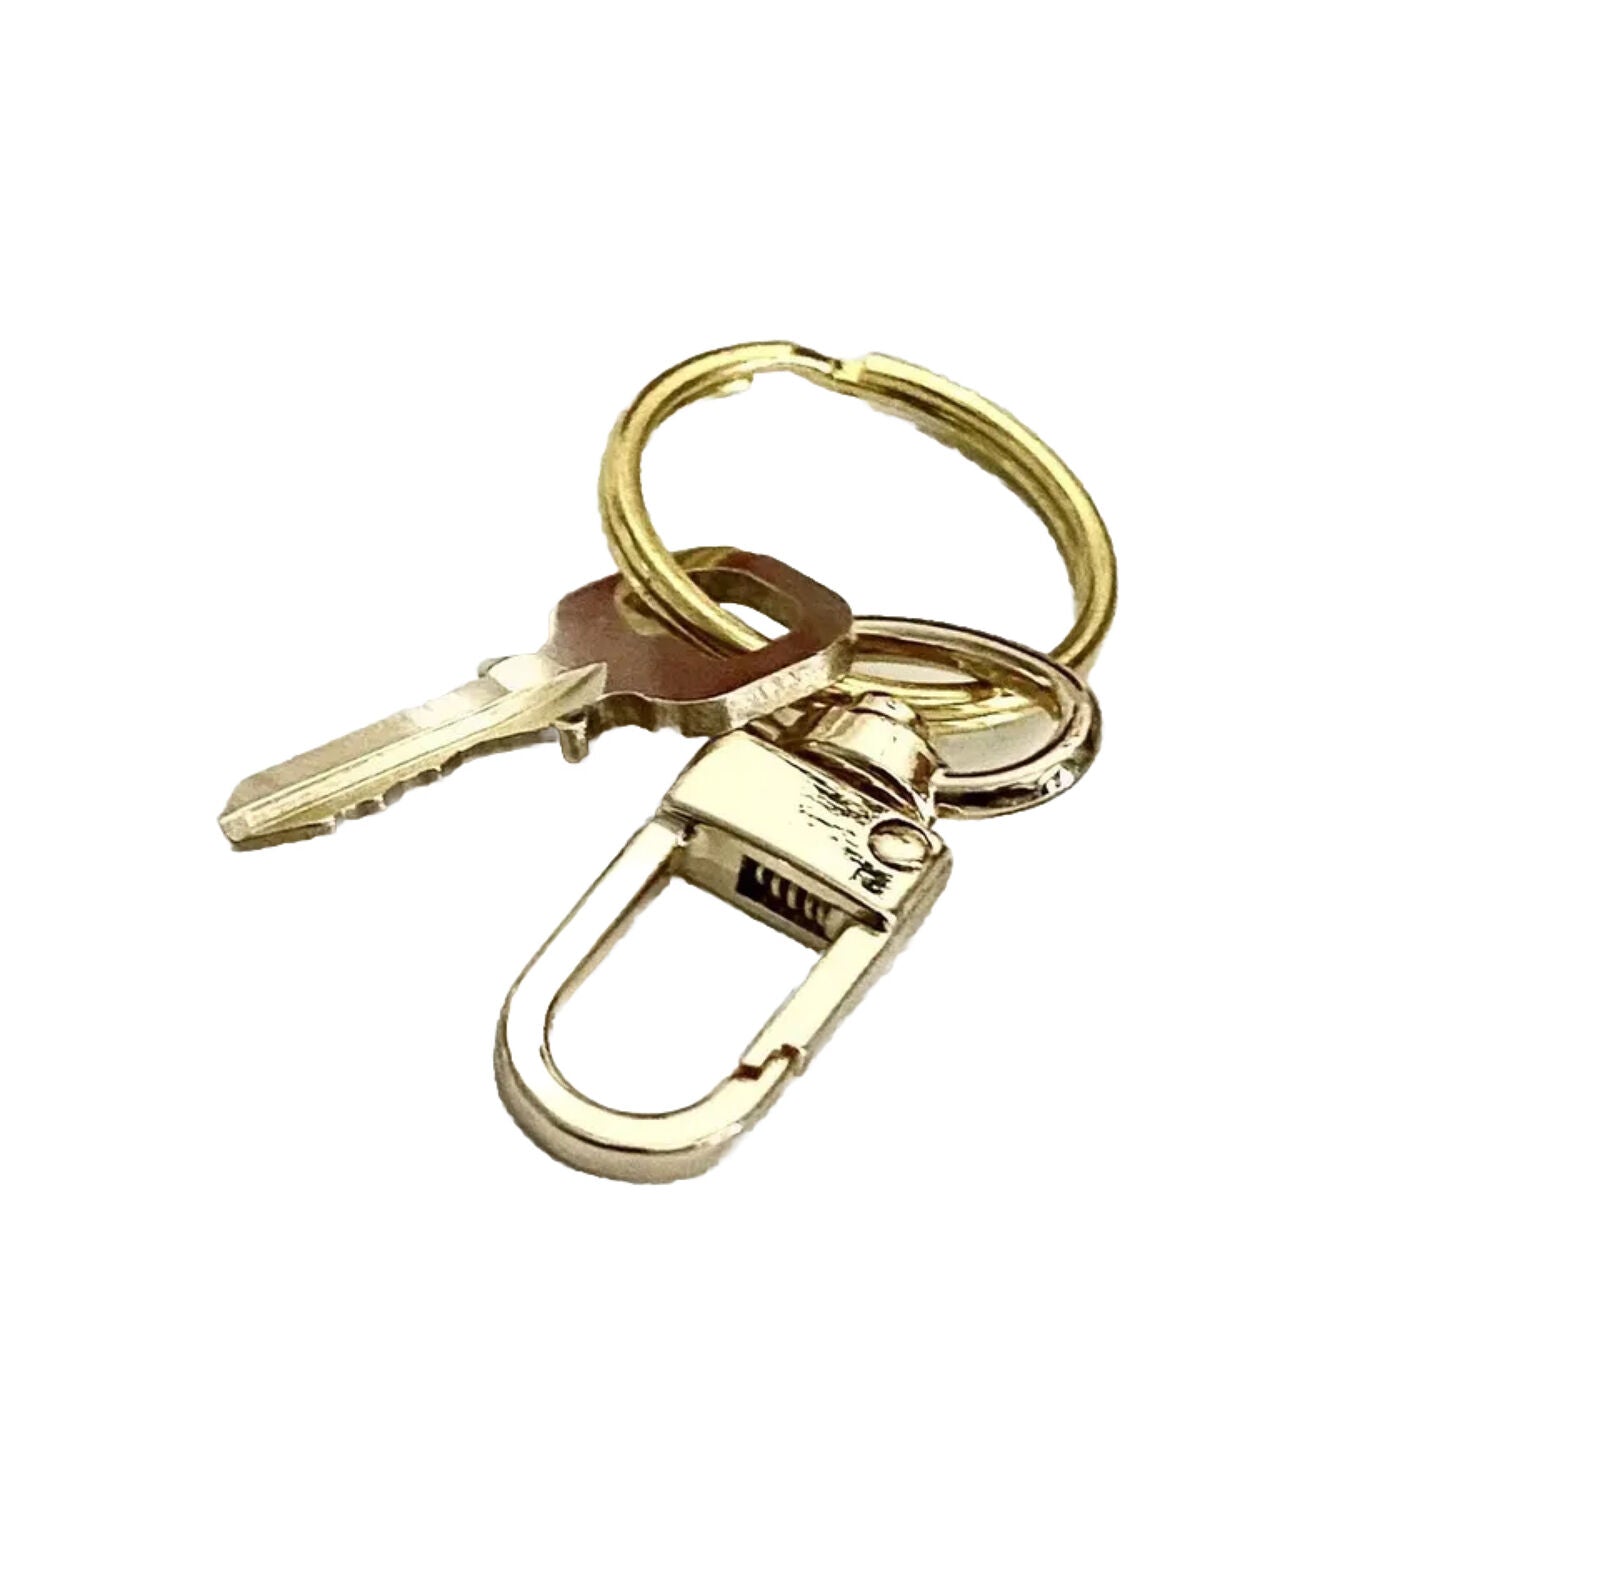 1 Pc Louis Vuitton Key 305 Brass Goldtone w/ Generic Swivel Clasp GENUINE!